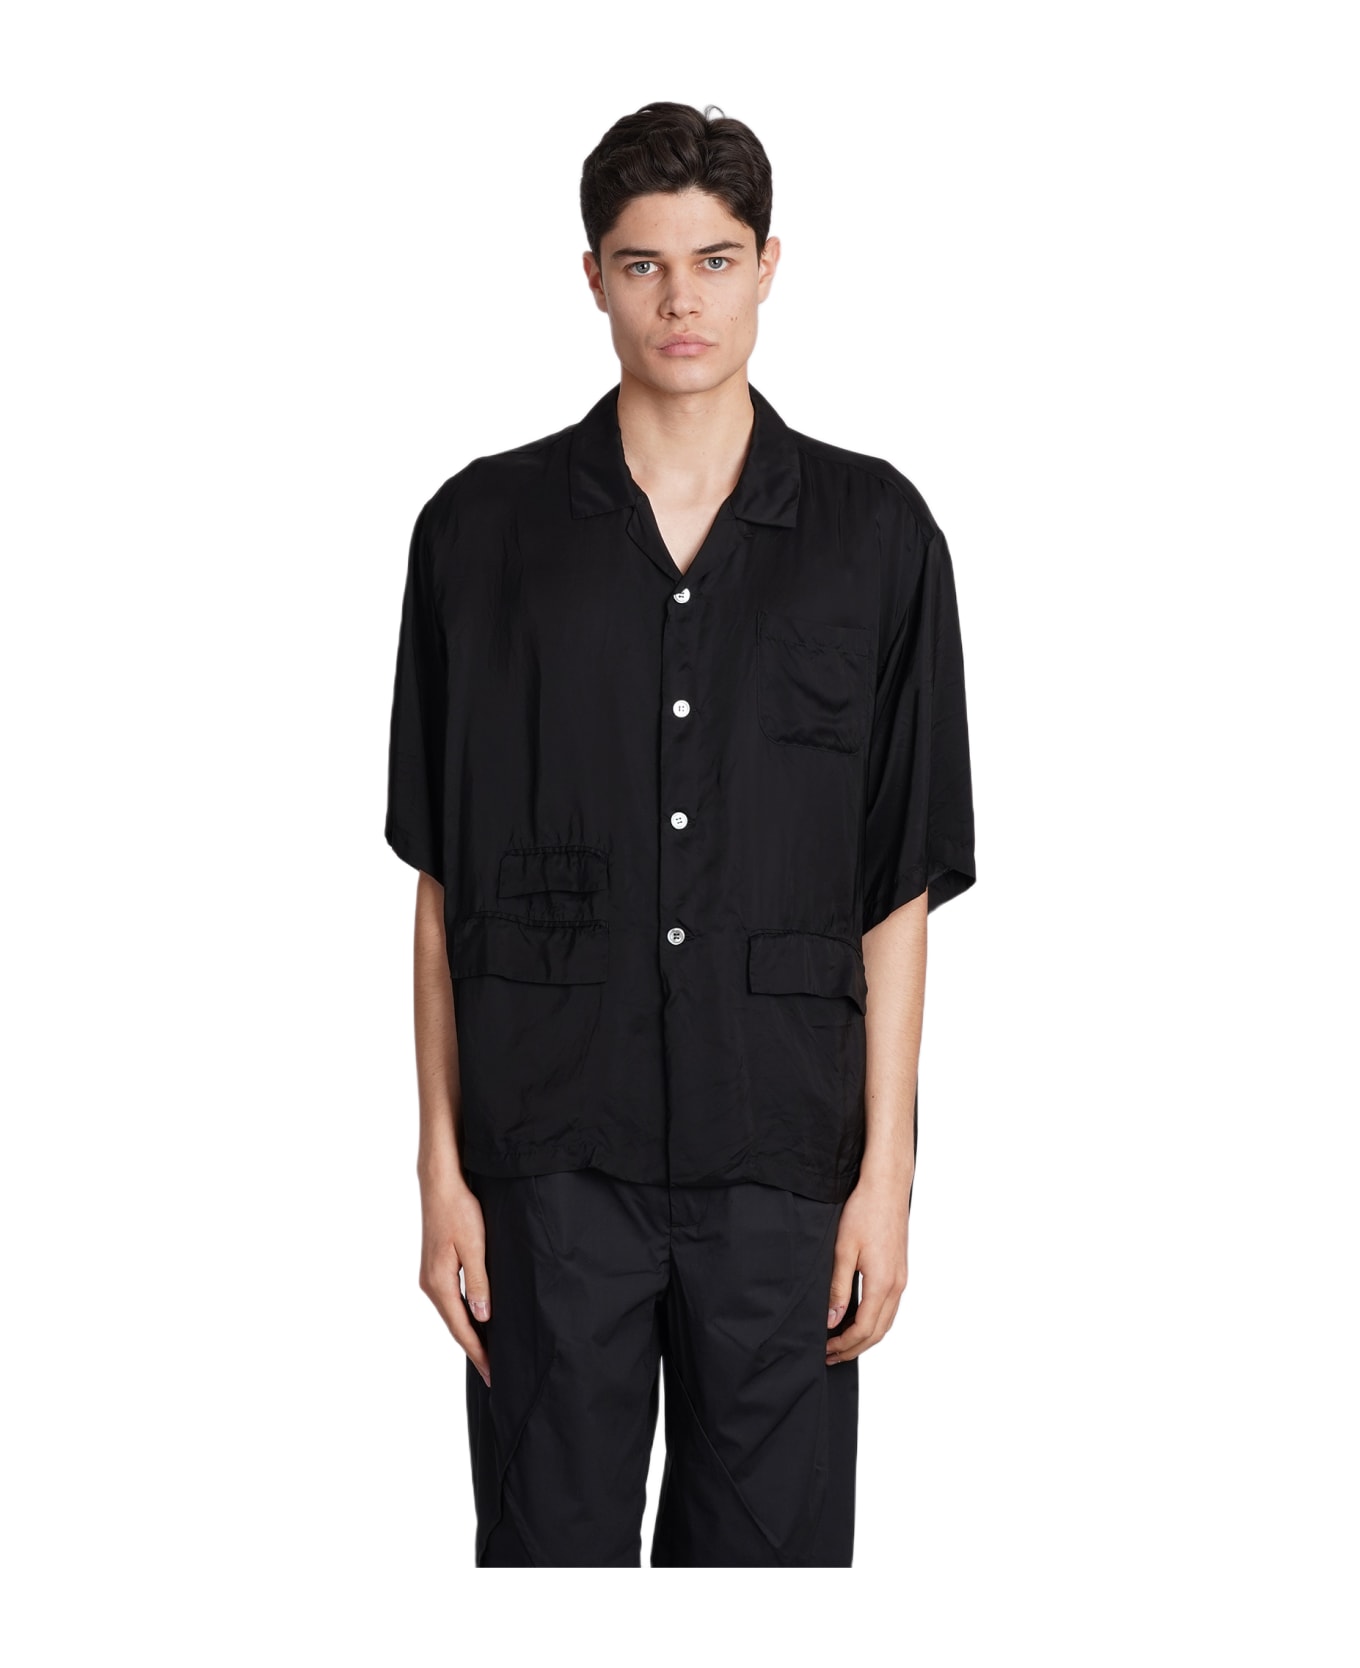 Undercover Jun Takahashi Shirt In Black Polyamide Polyester - black